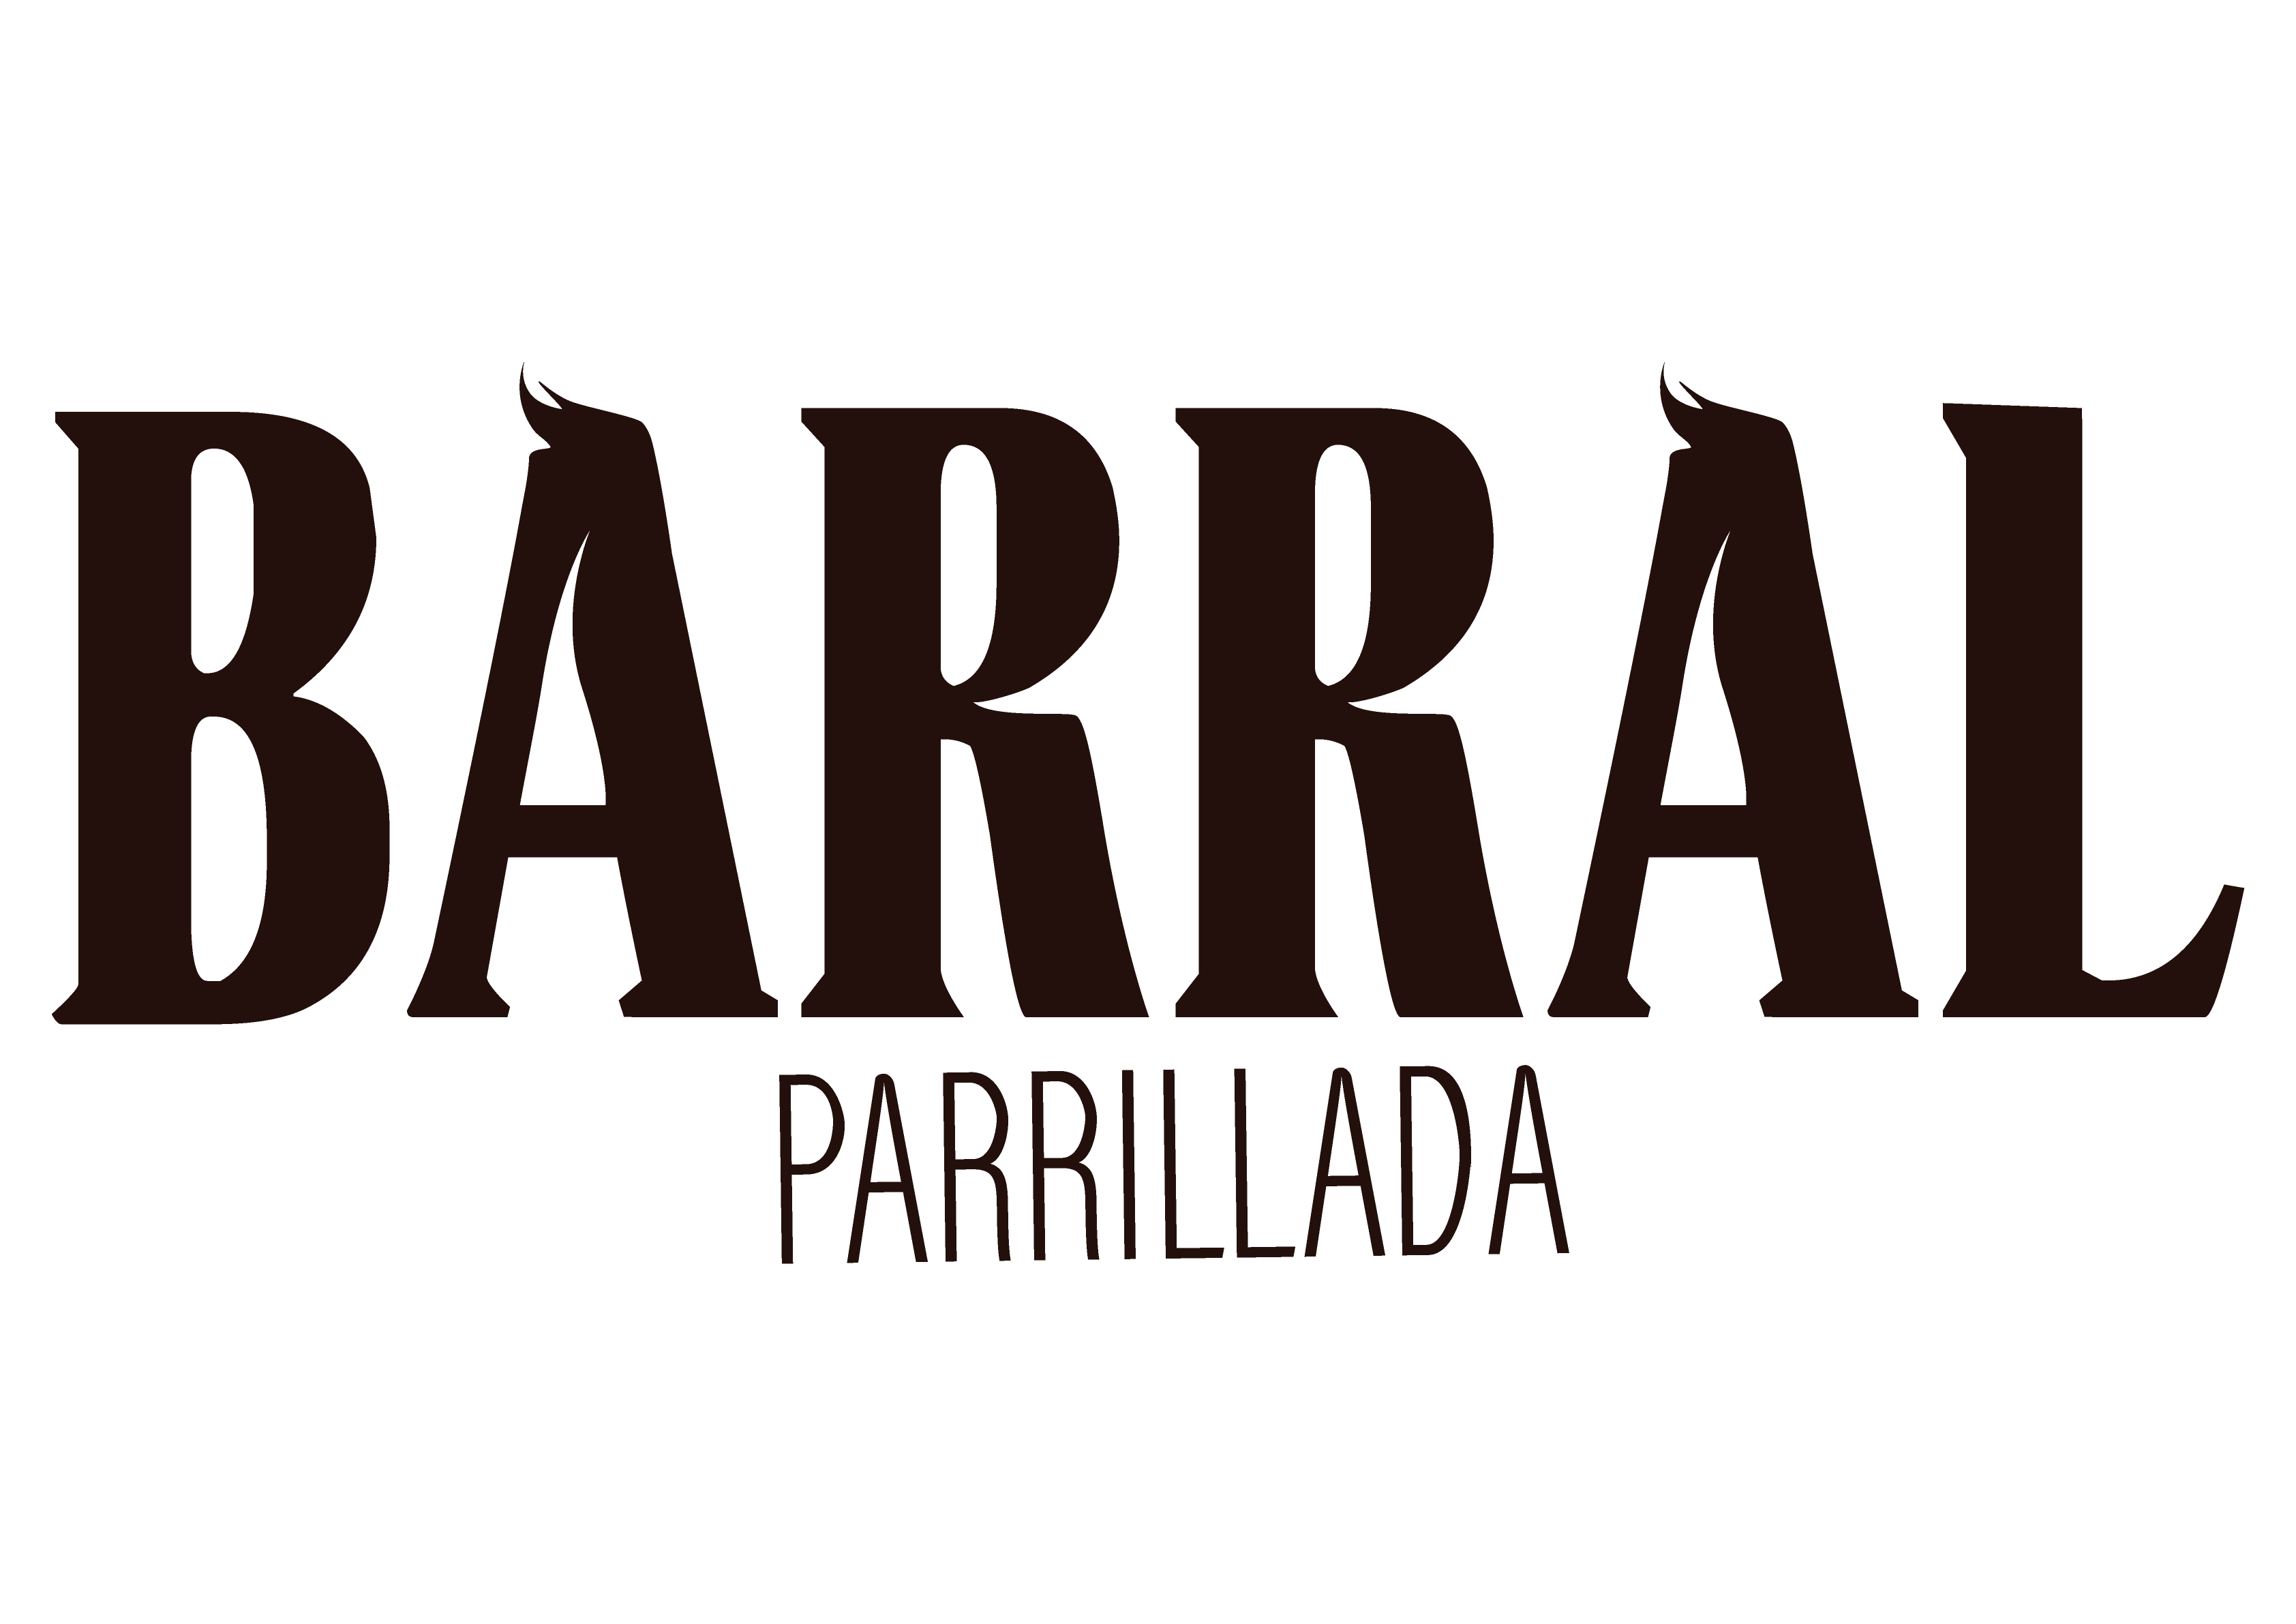 Logotipo de la Partillada Barral en Coirós